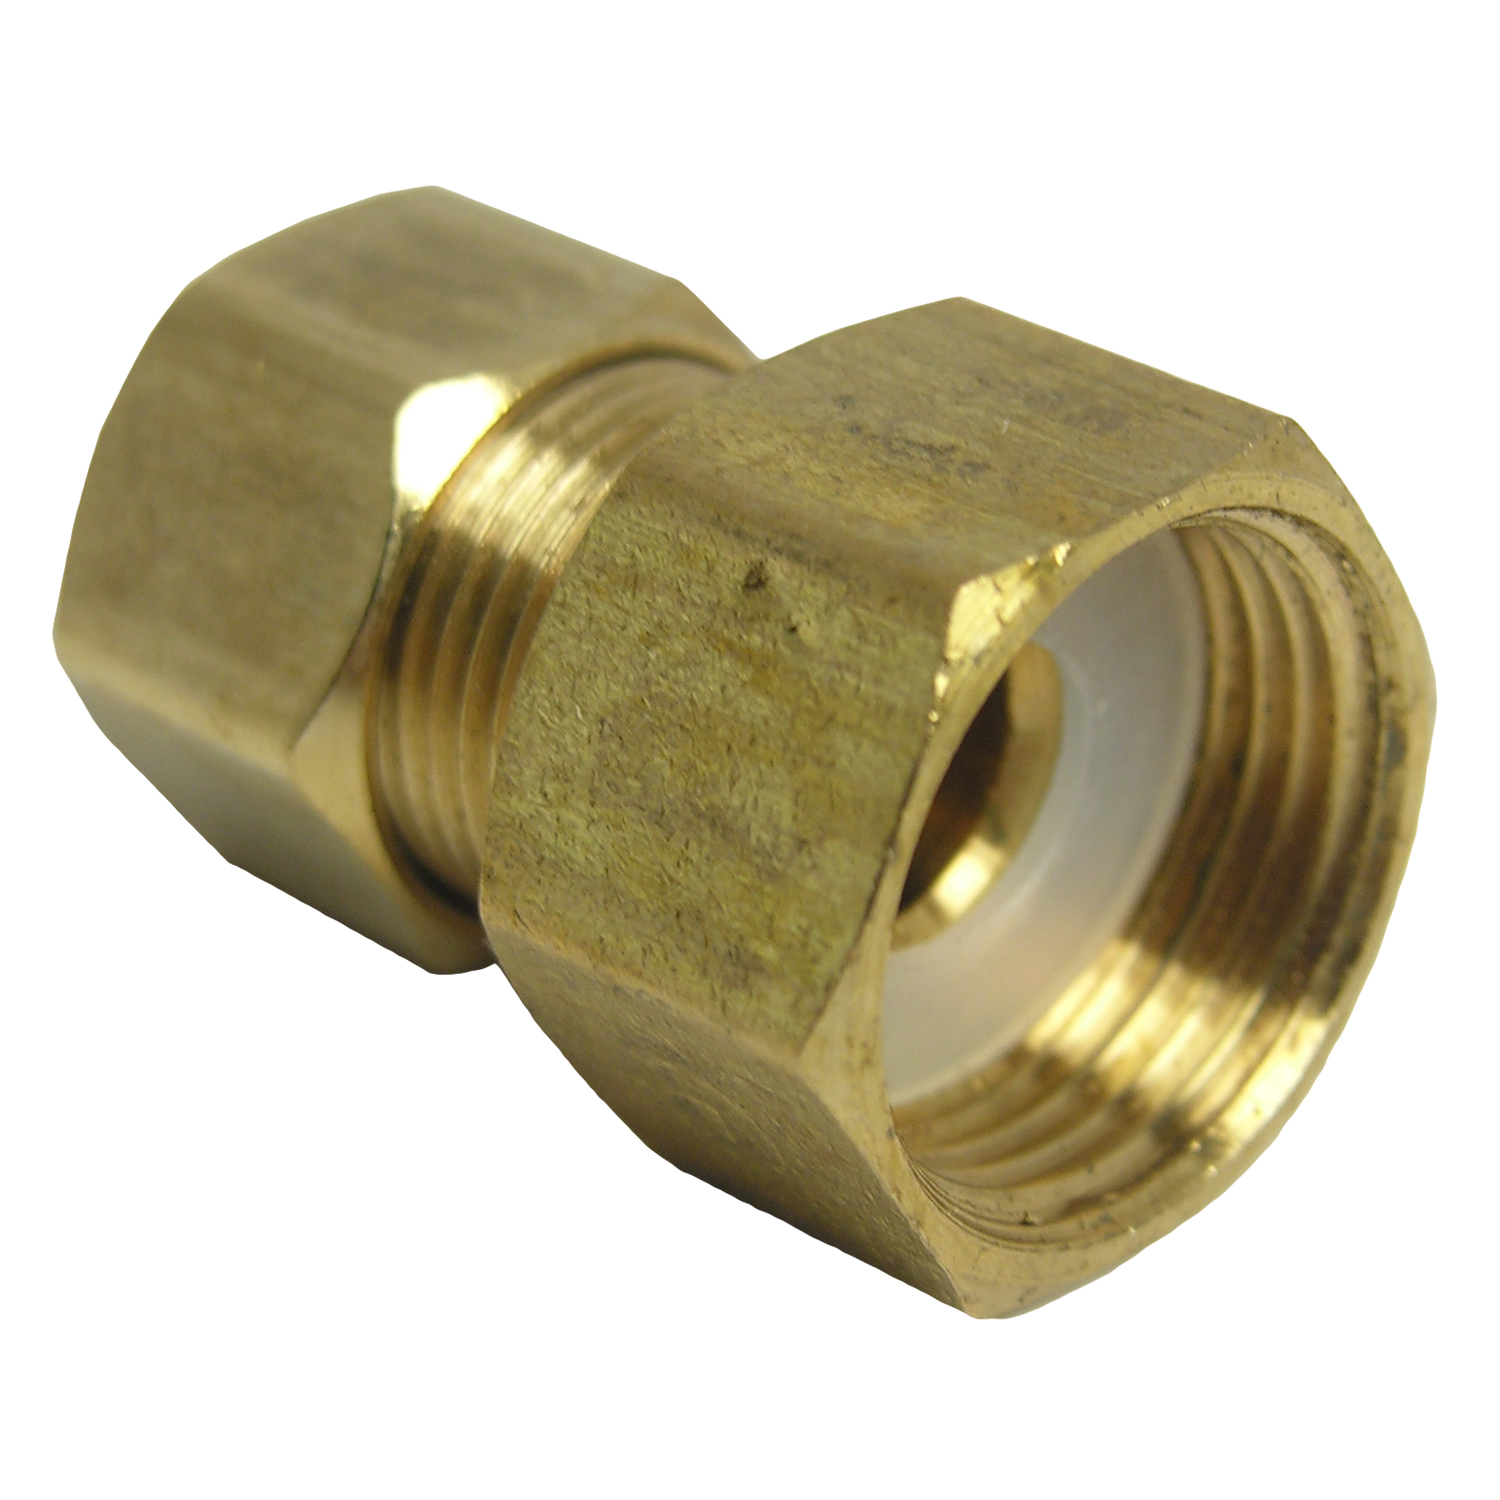 17-6761 Pipe Adapter, 1/2 x 3/8 in, Female Compression x Male Compression, Brass, 200 psi Pressure